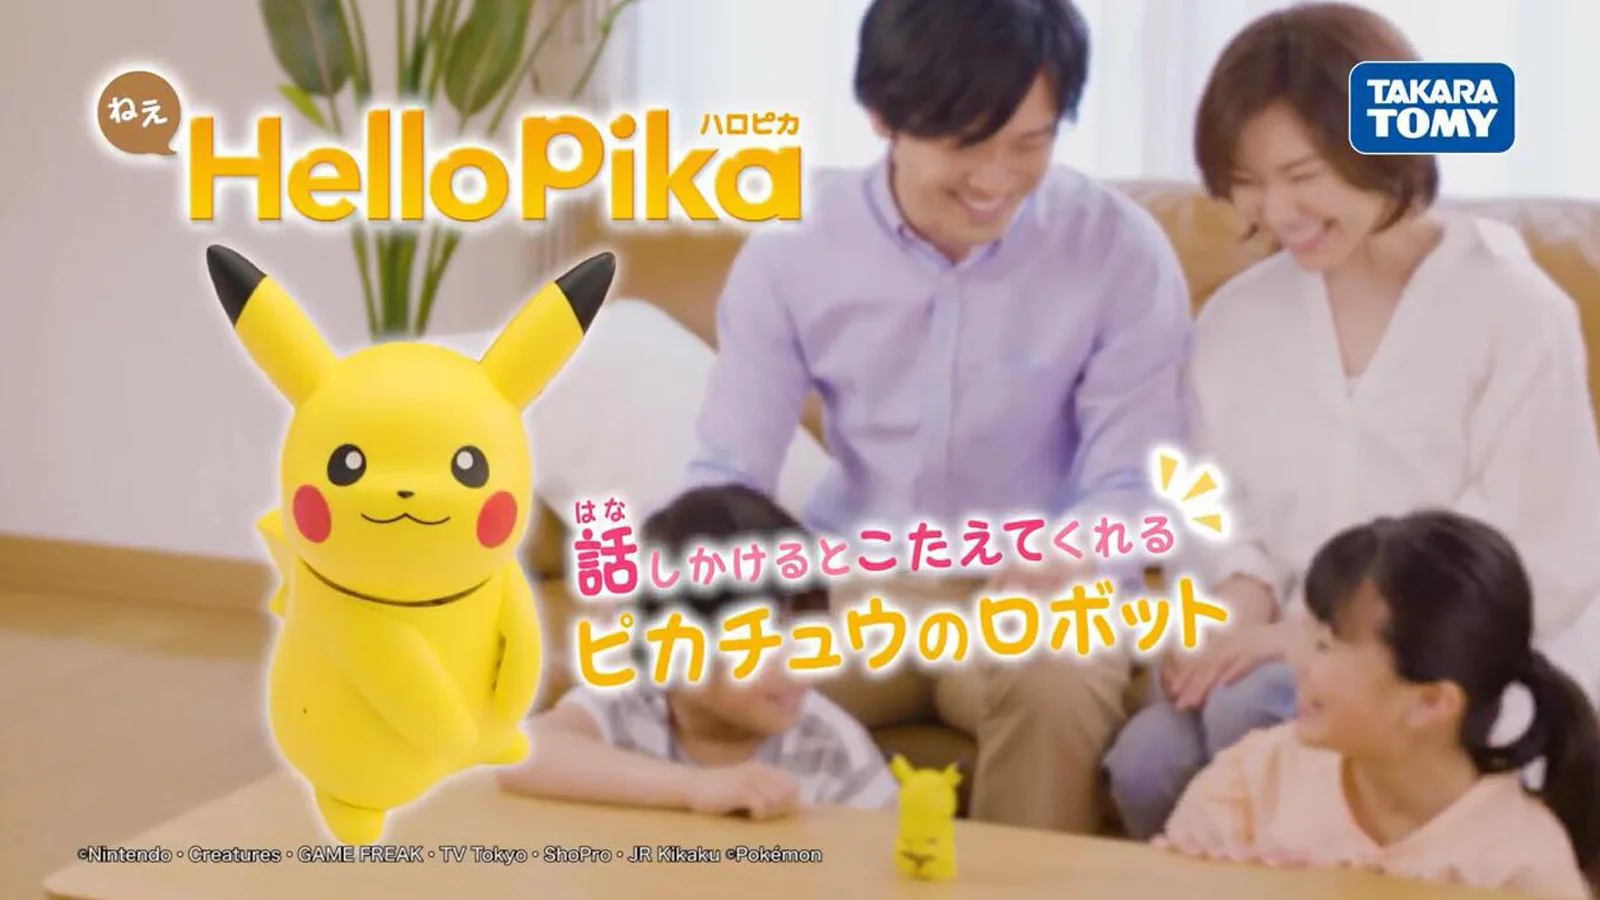 皮卡丘对话迷你机器人“ねえ Hello Pika”发布预告片，10cm可携带超级可爱！